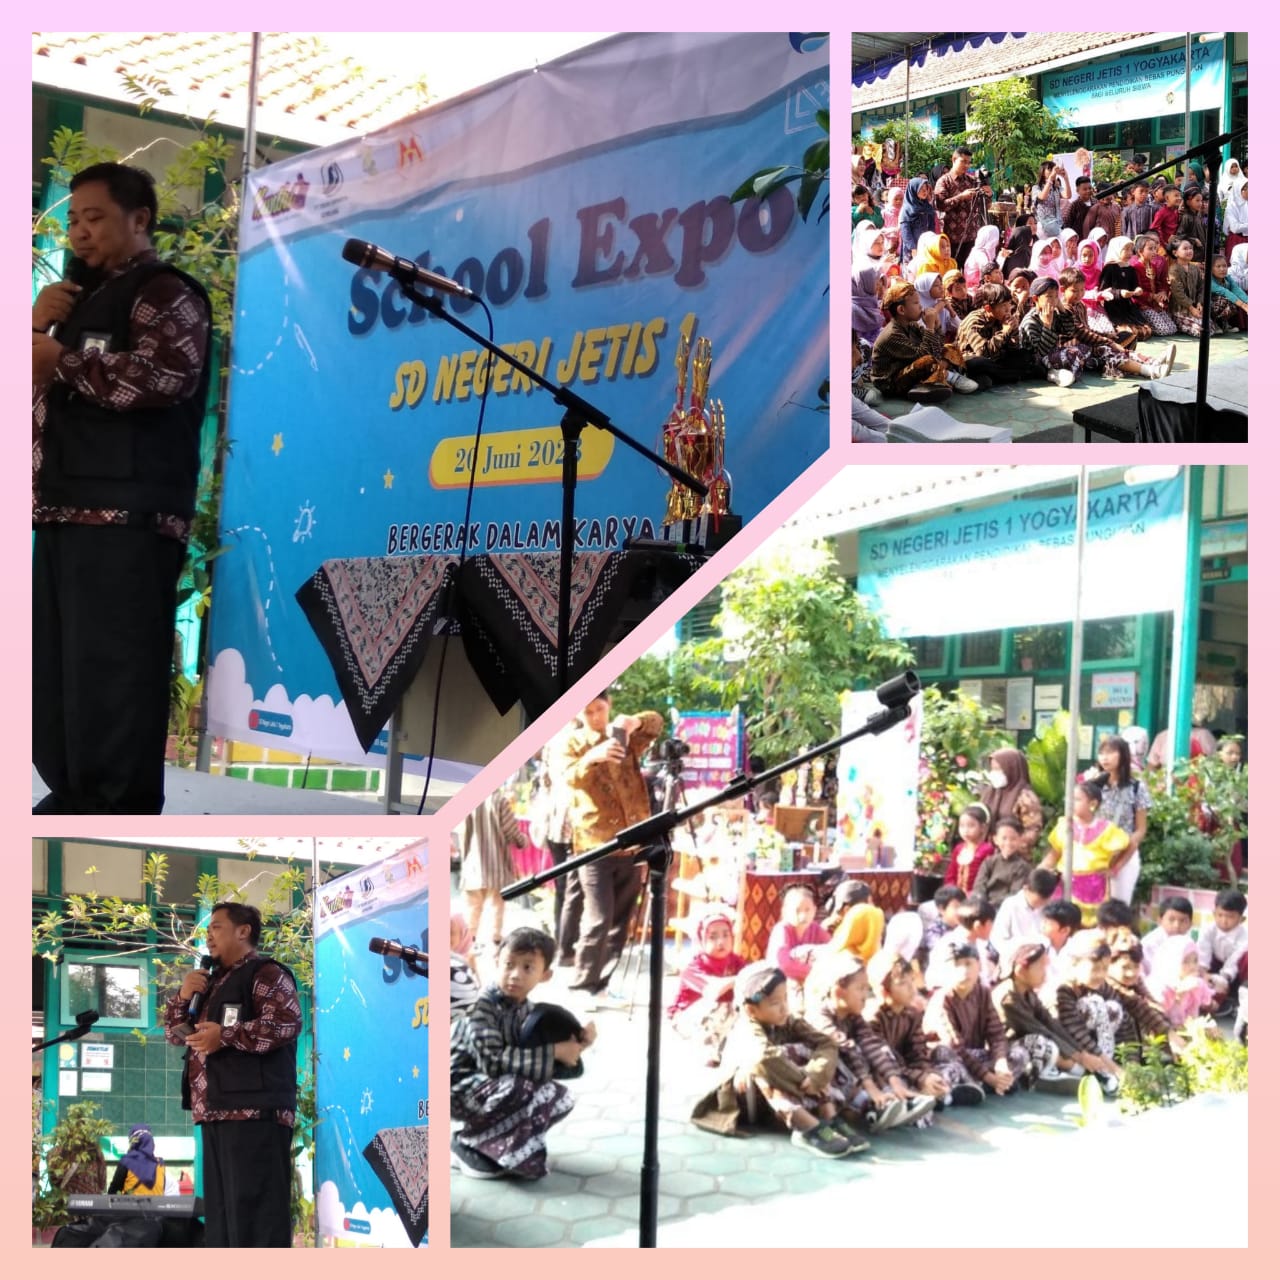 School Expo SD Negeri Jetis 1